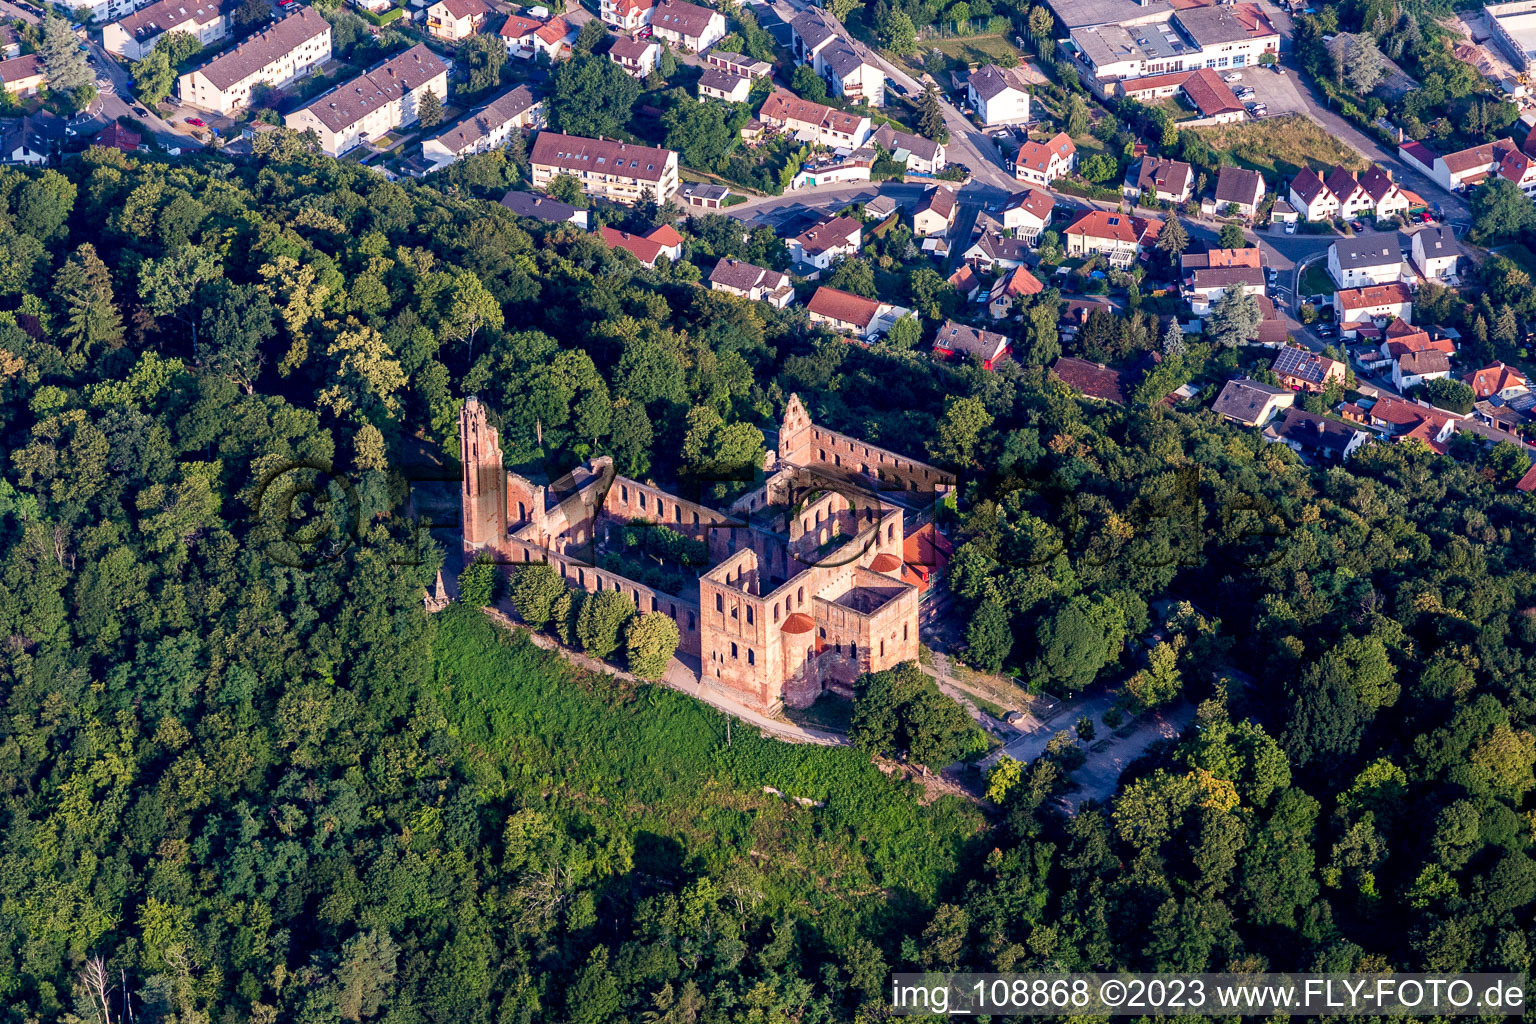 Monastère de Limbourg à le quartier Grethen in Bad Dürkheim dans le département Rhénanie-Palatinat, Allemagne hors des airs